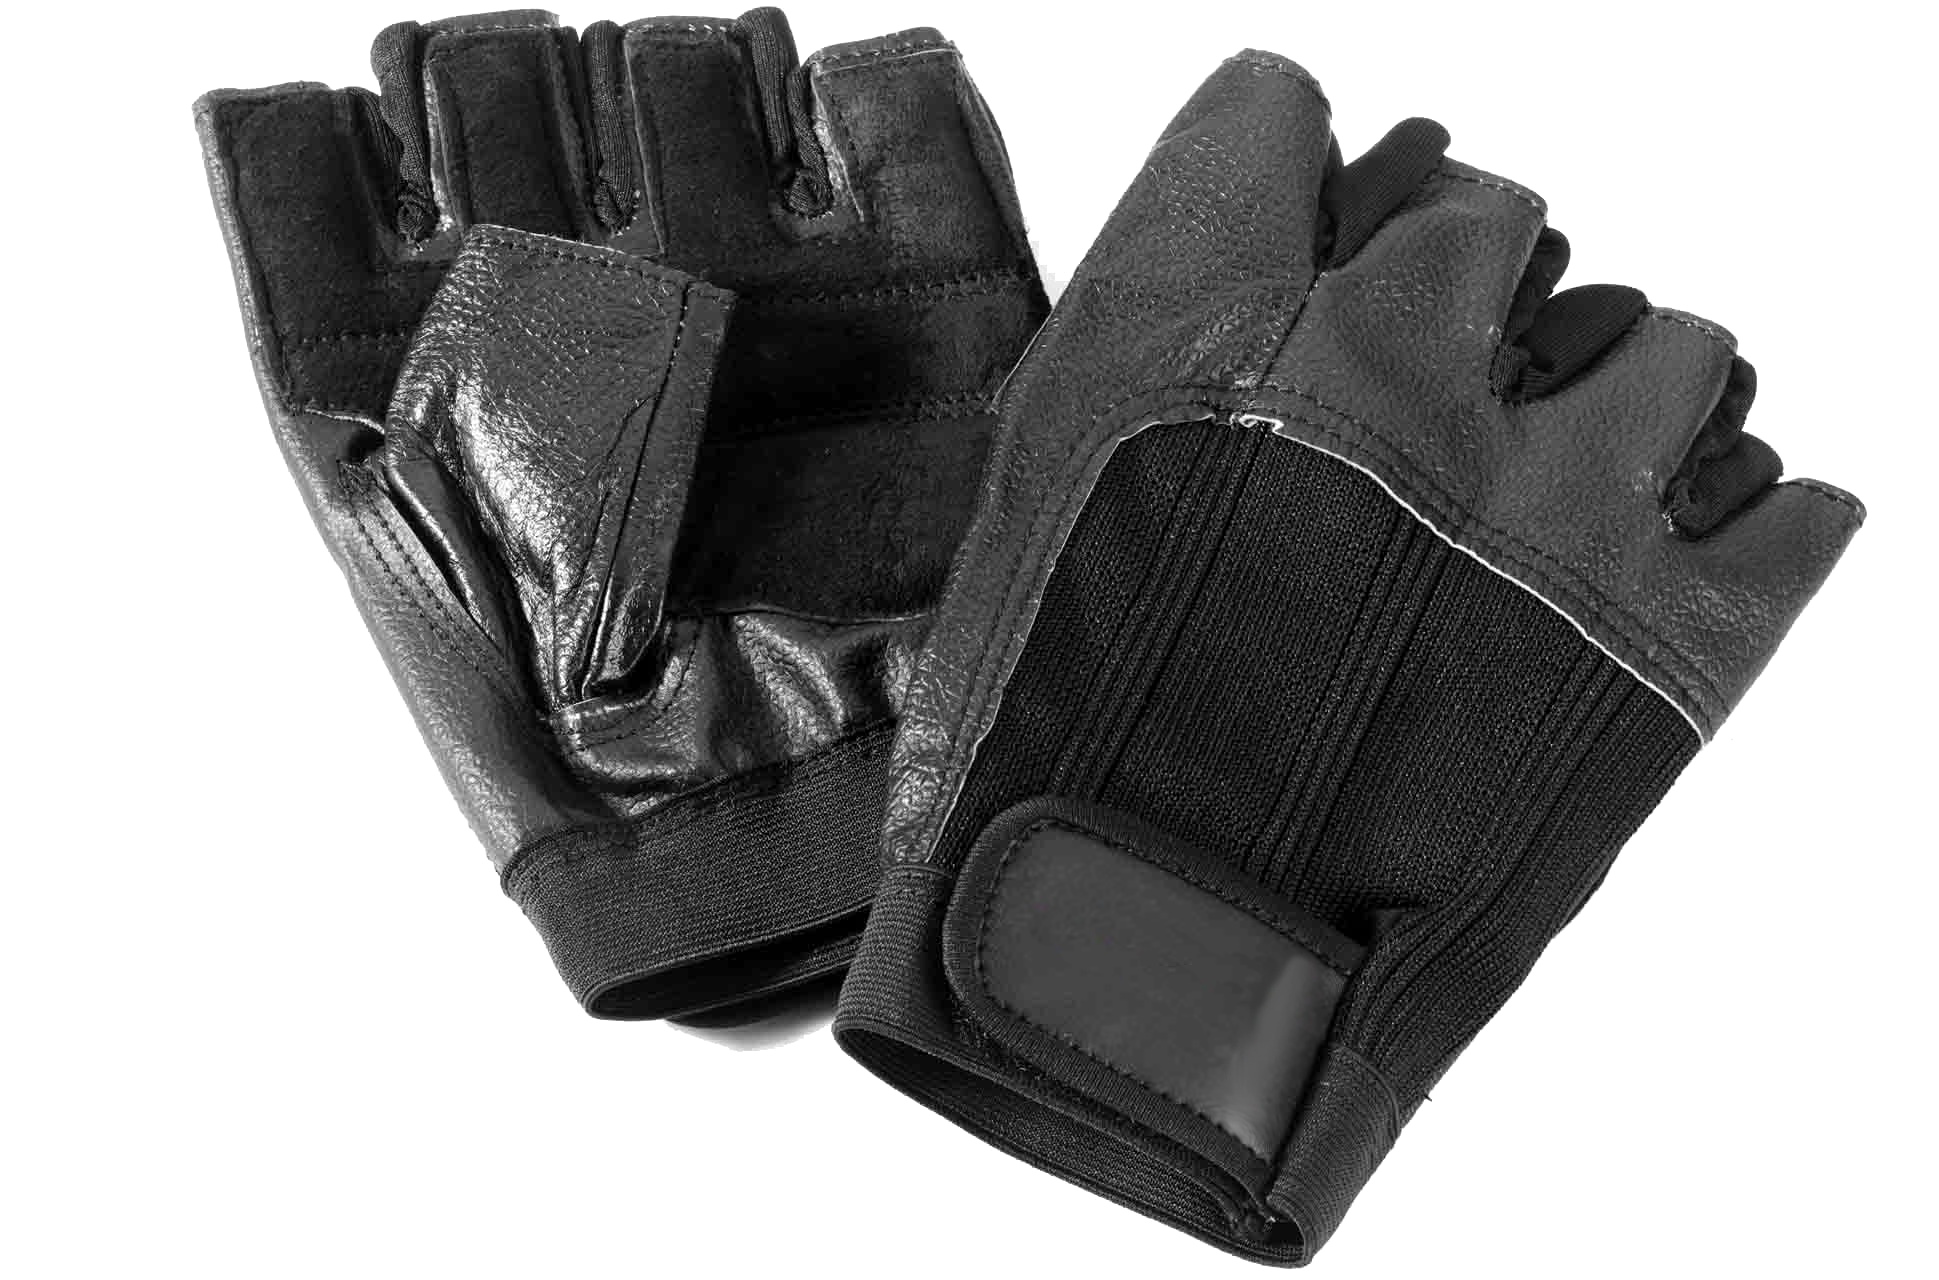 Weight gloves